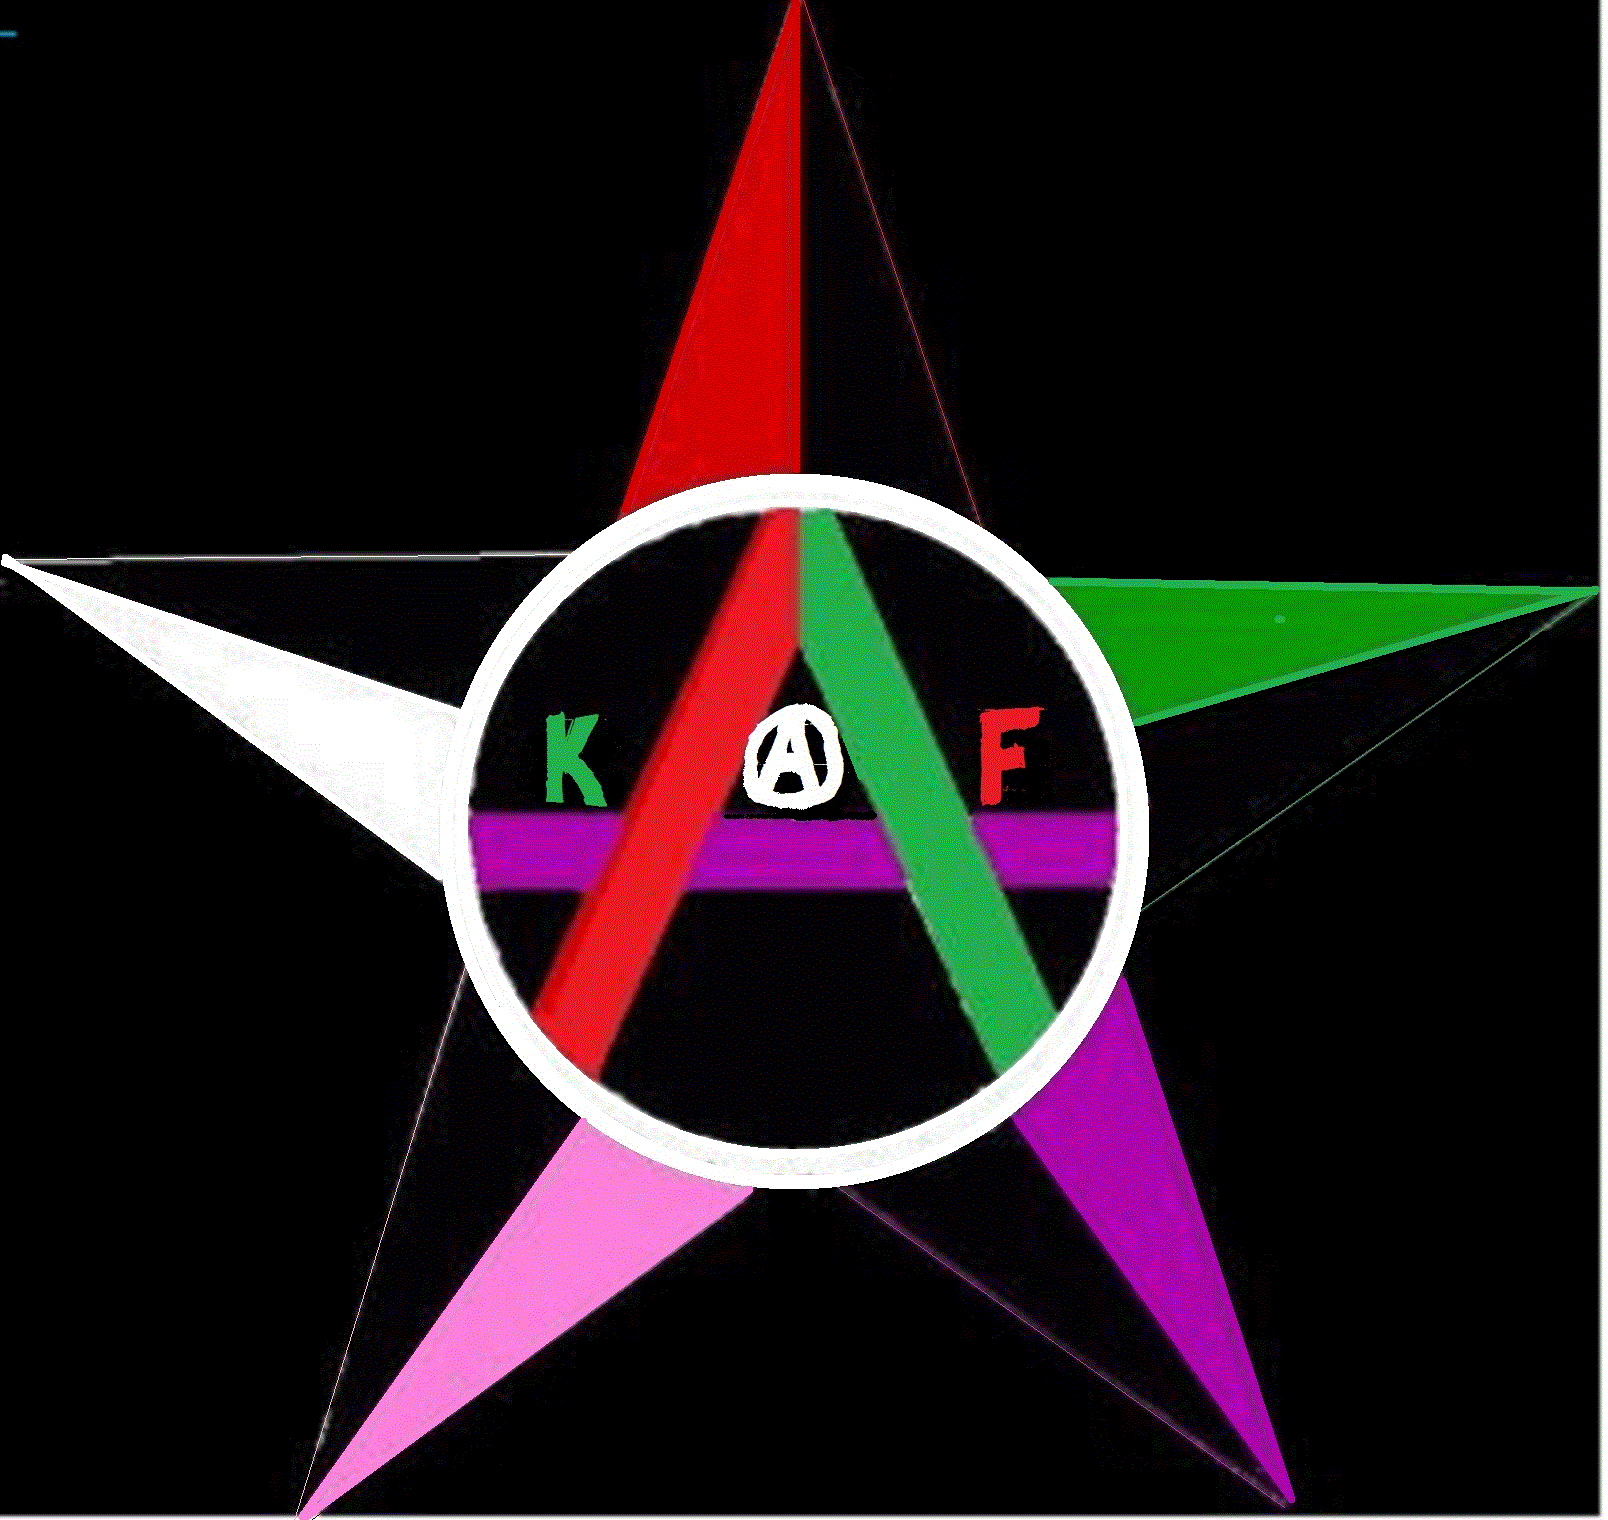 kaf4